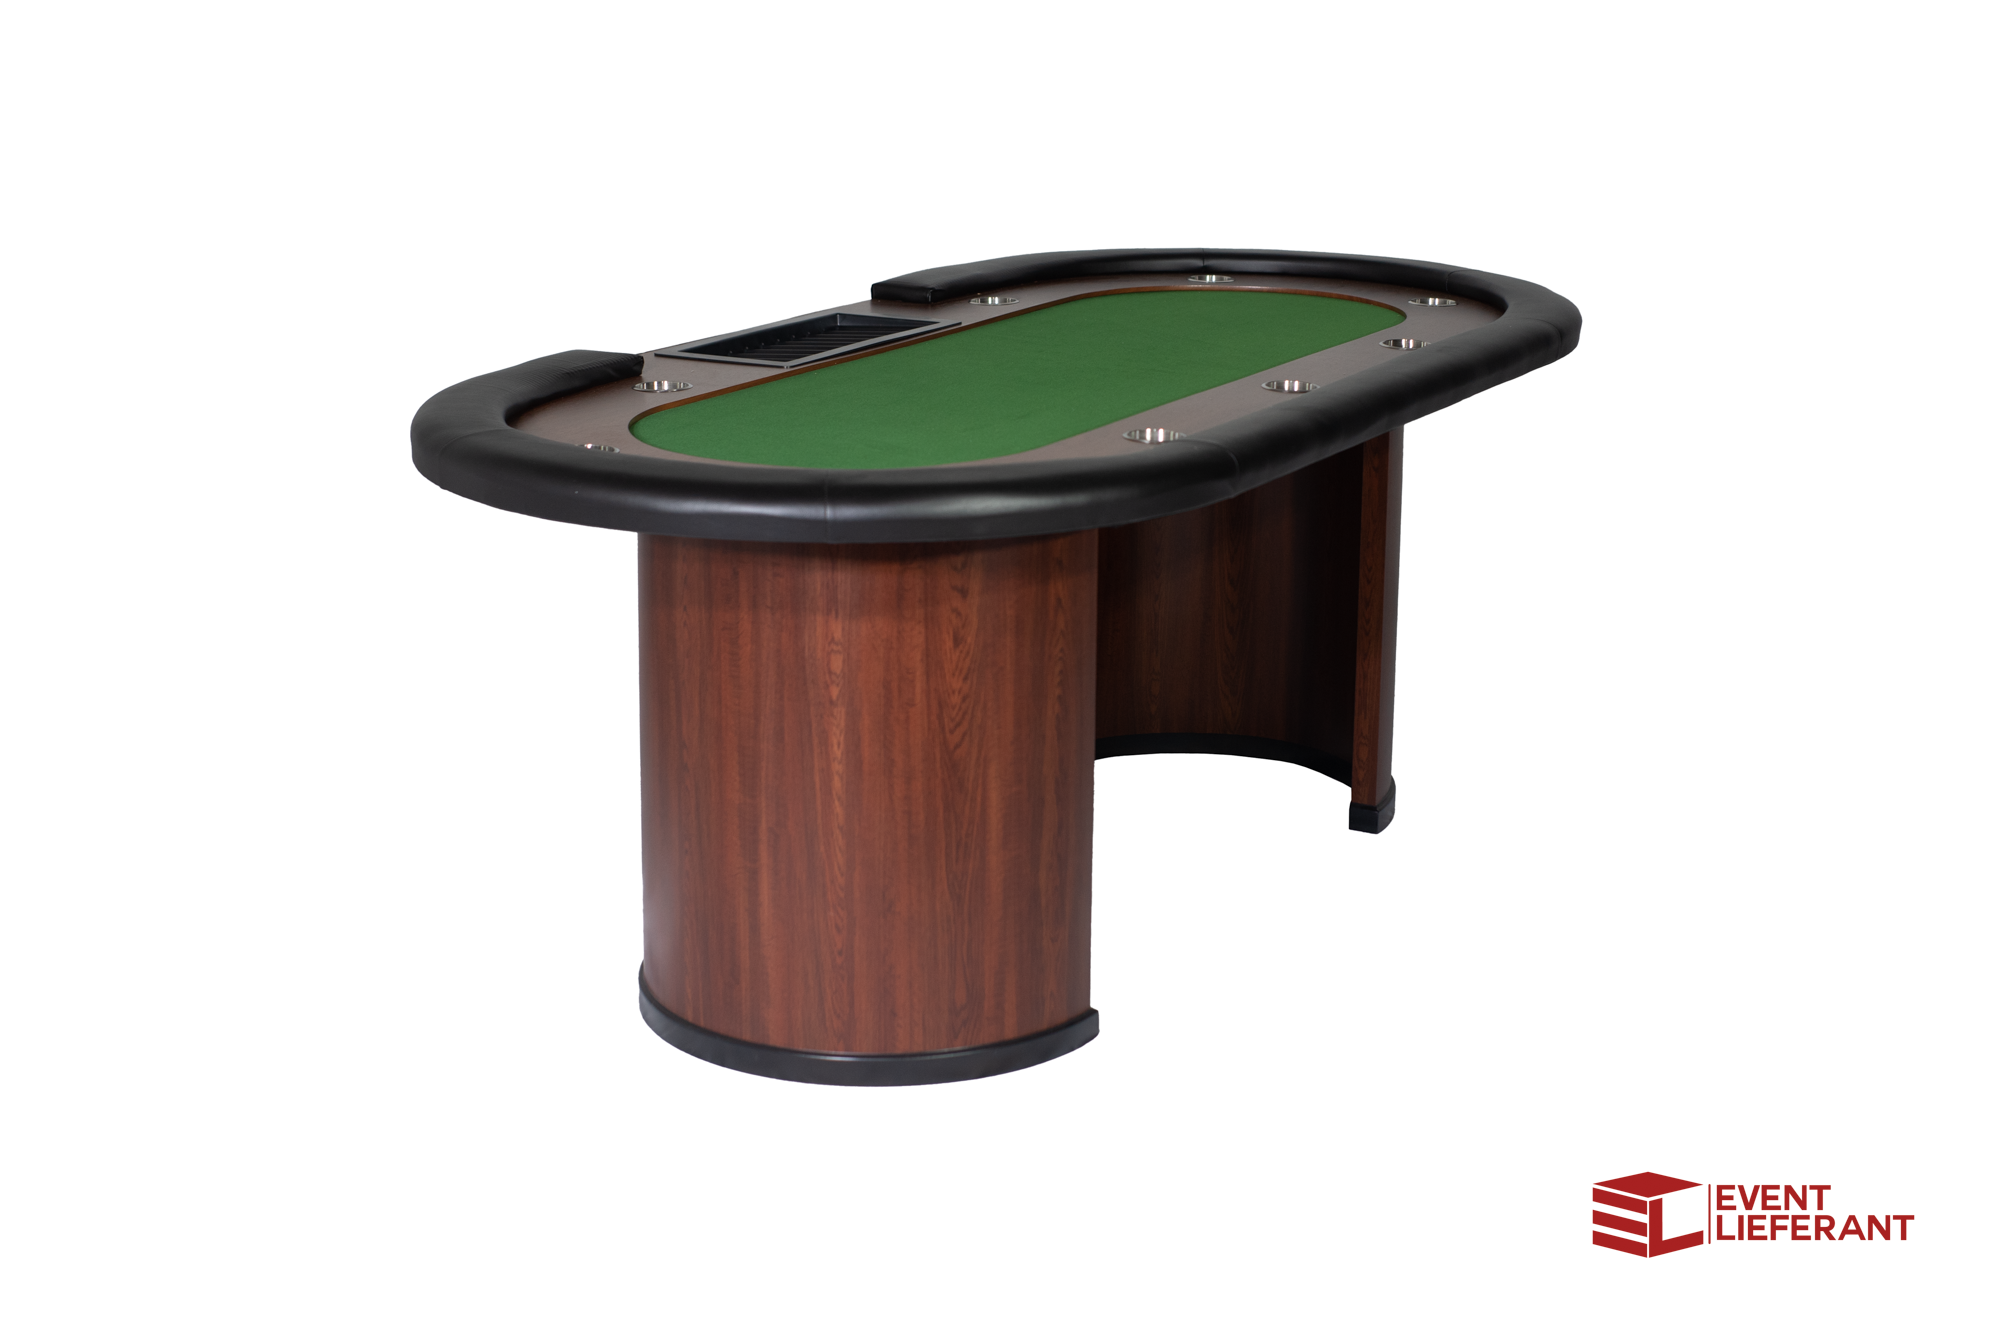 Grüner Pokertisch 213x106 cm, 1000 Laserchips, abschließbare Alu-Koffer